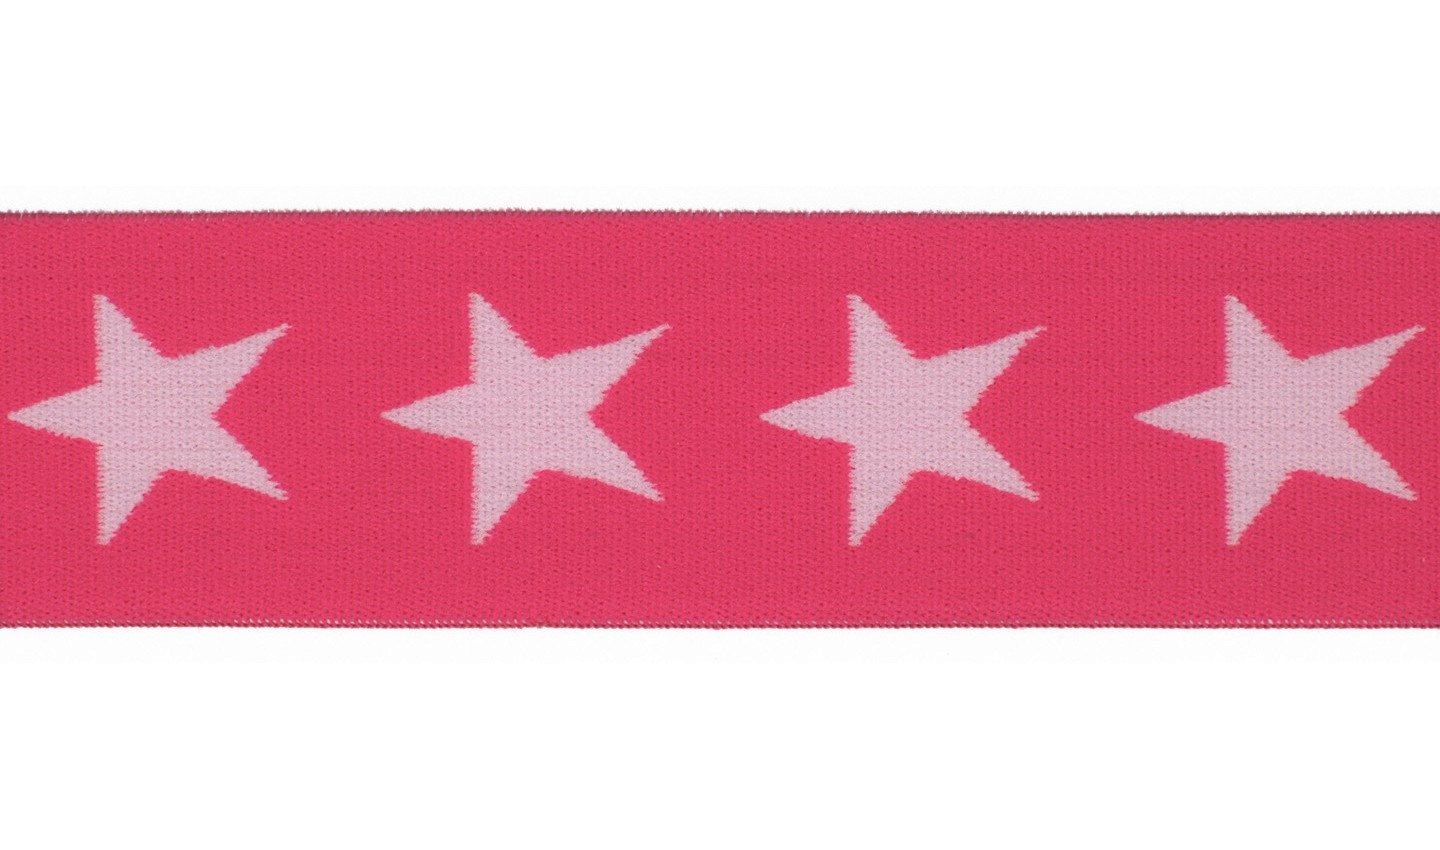 Gummiband 40mm pink mit hellrosa Sternen (517)